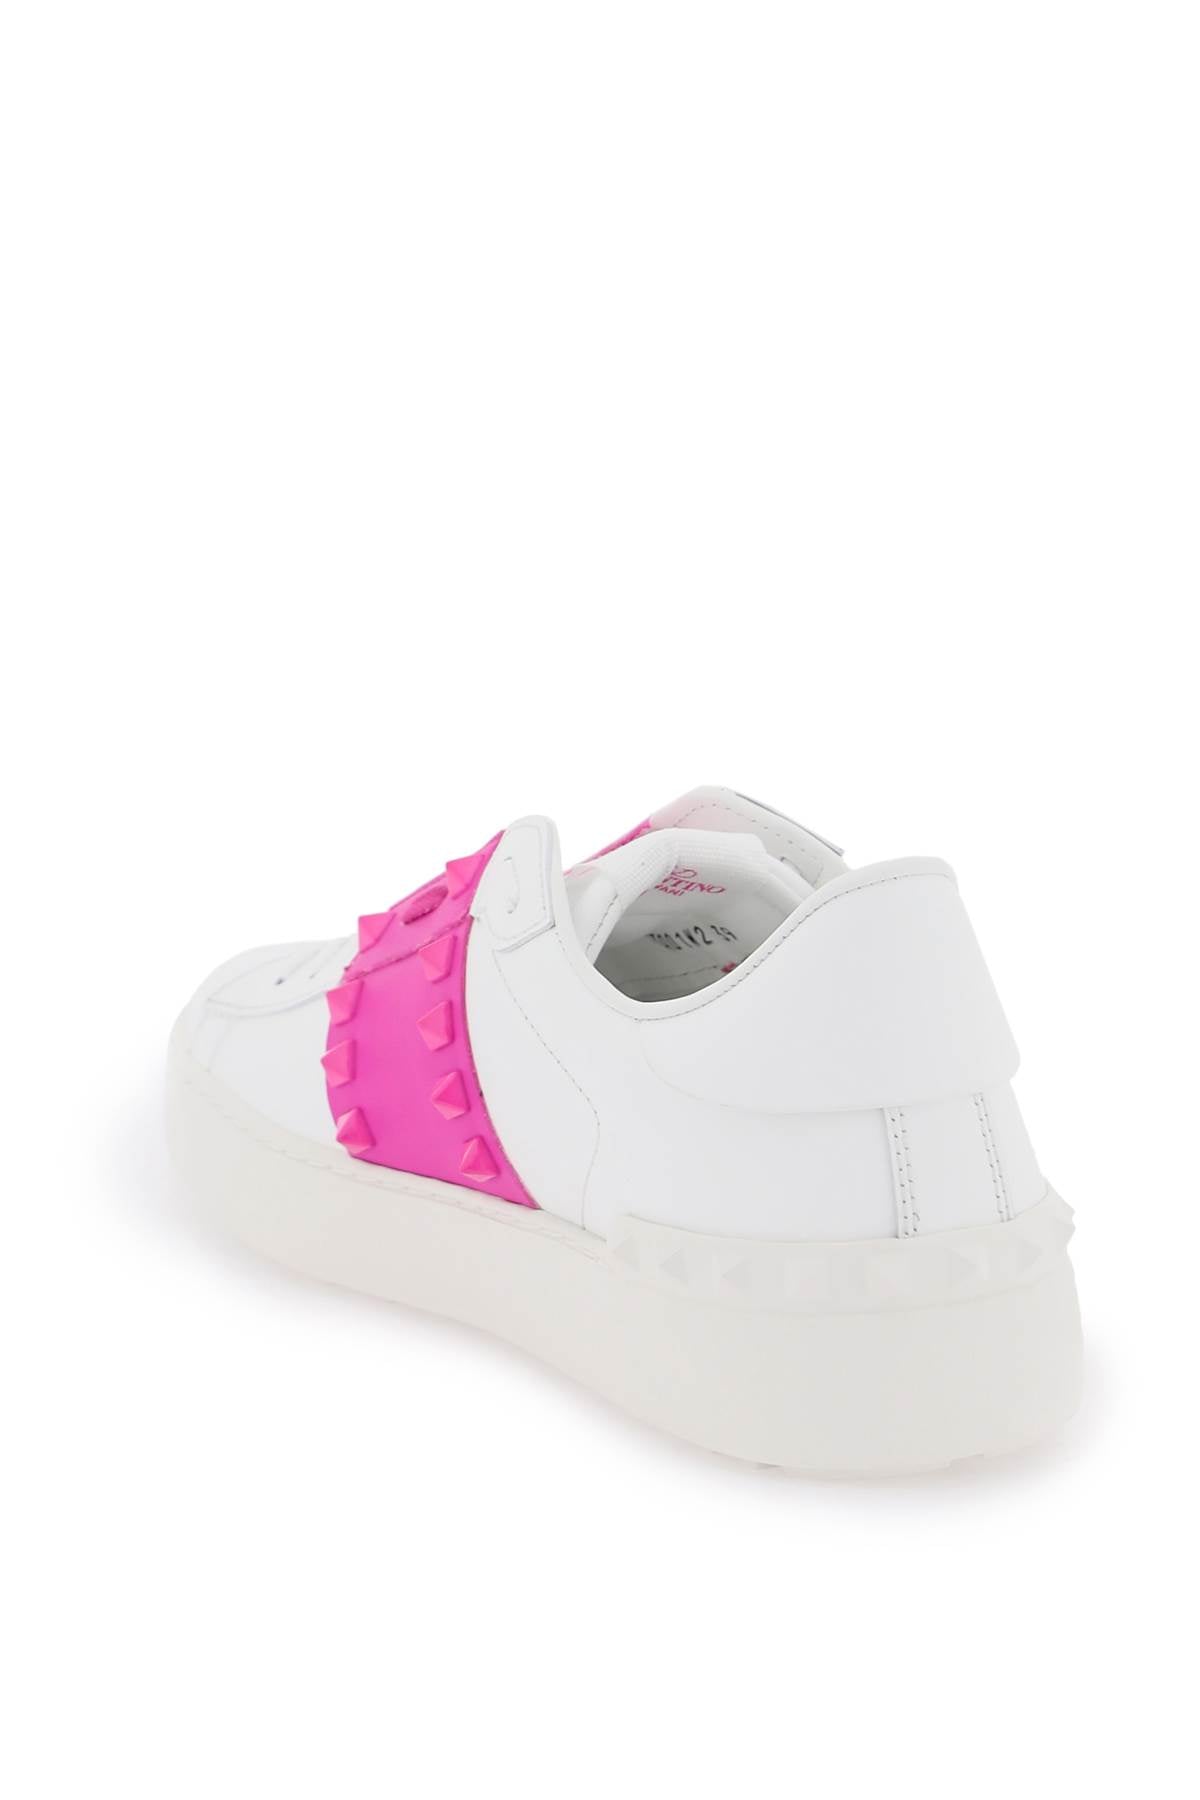 Đôi giày phối màu trắng và hồng tím hạnh phúc cho phụ nữ - FW23